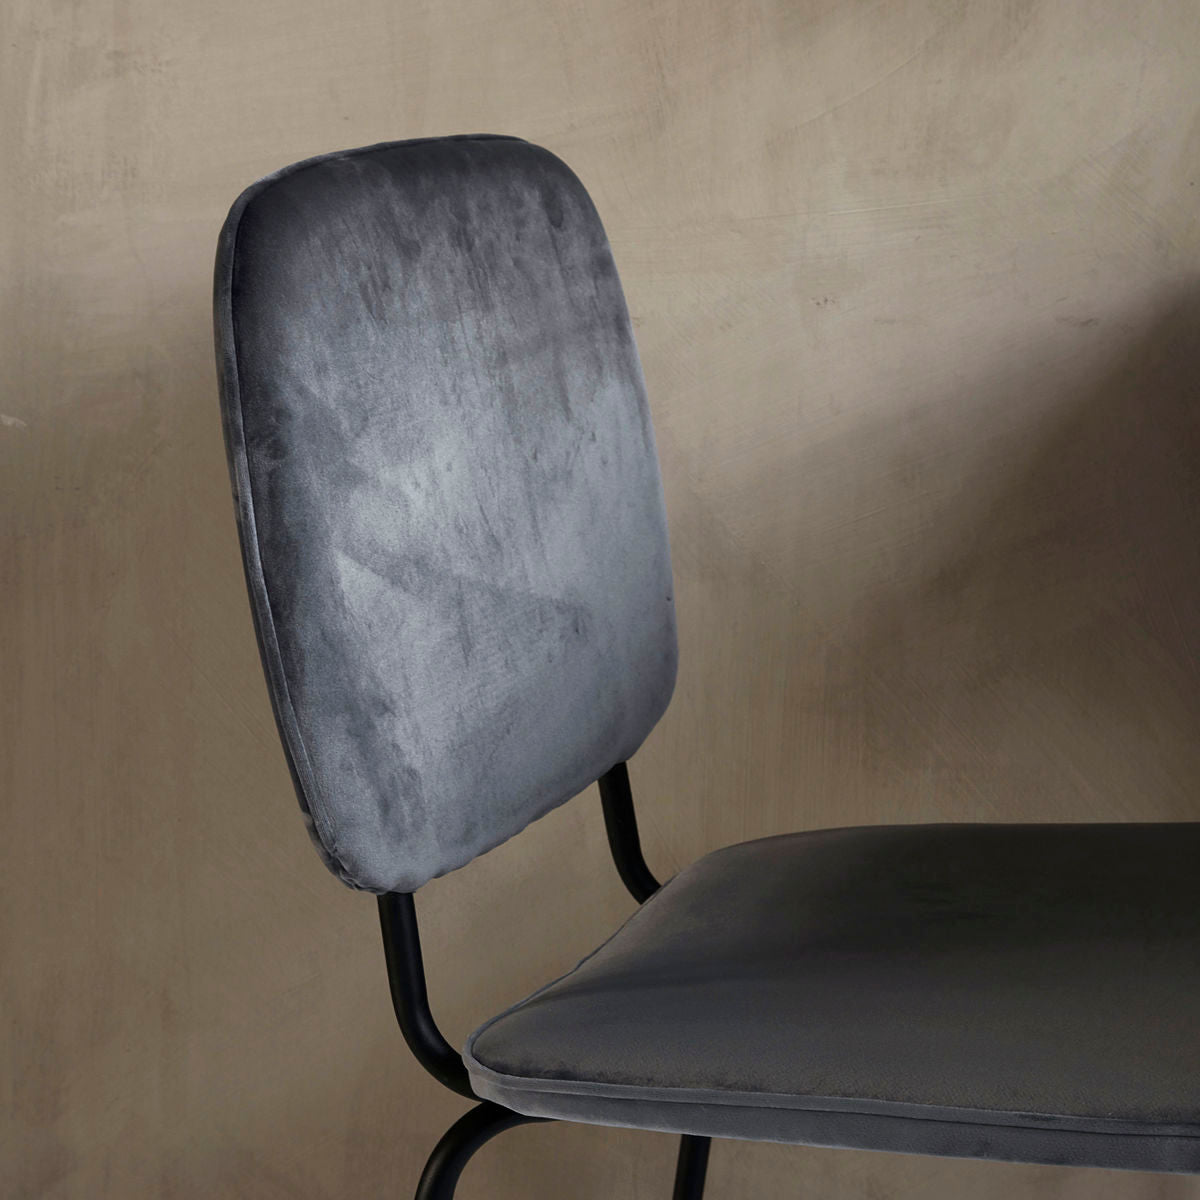 House Doctor Chair, HDComma, Grey